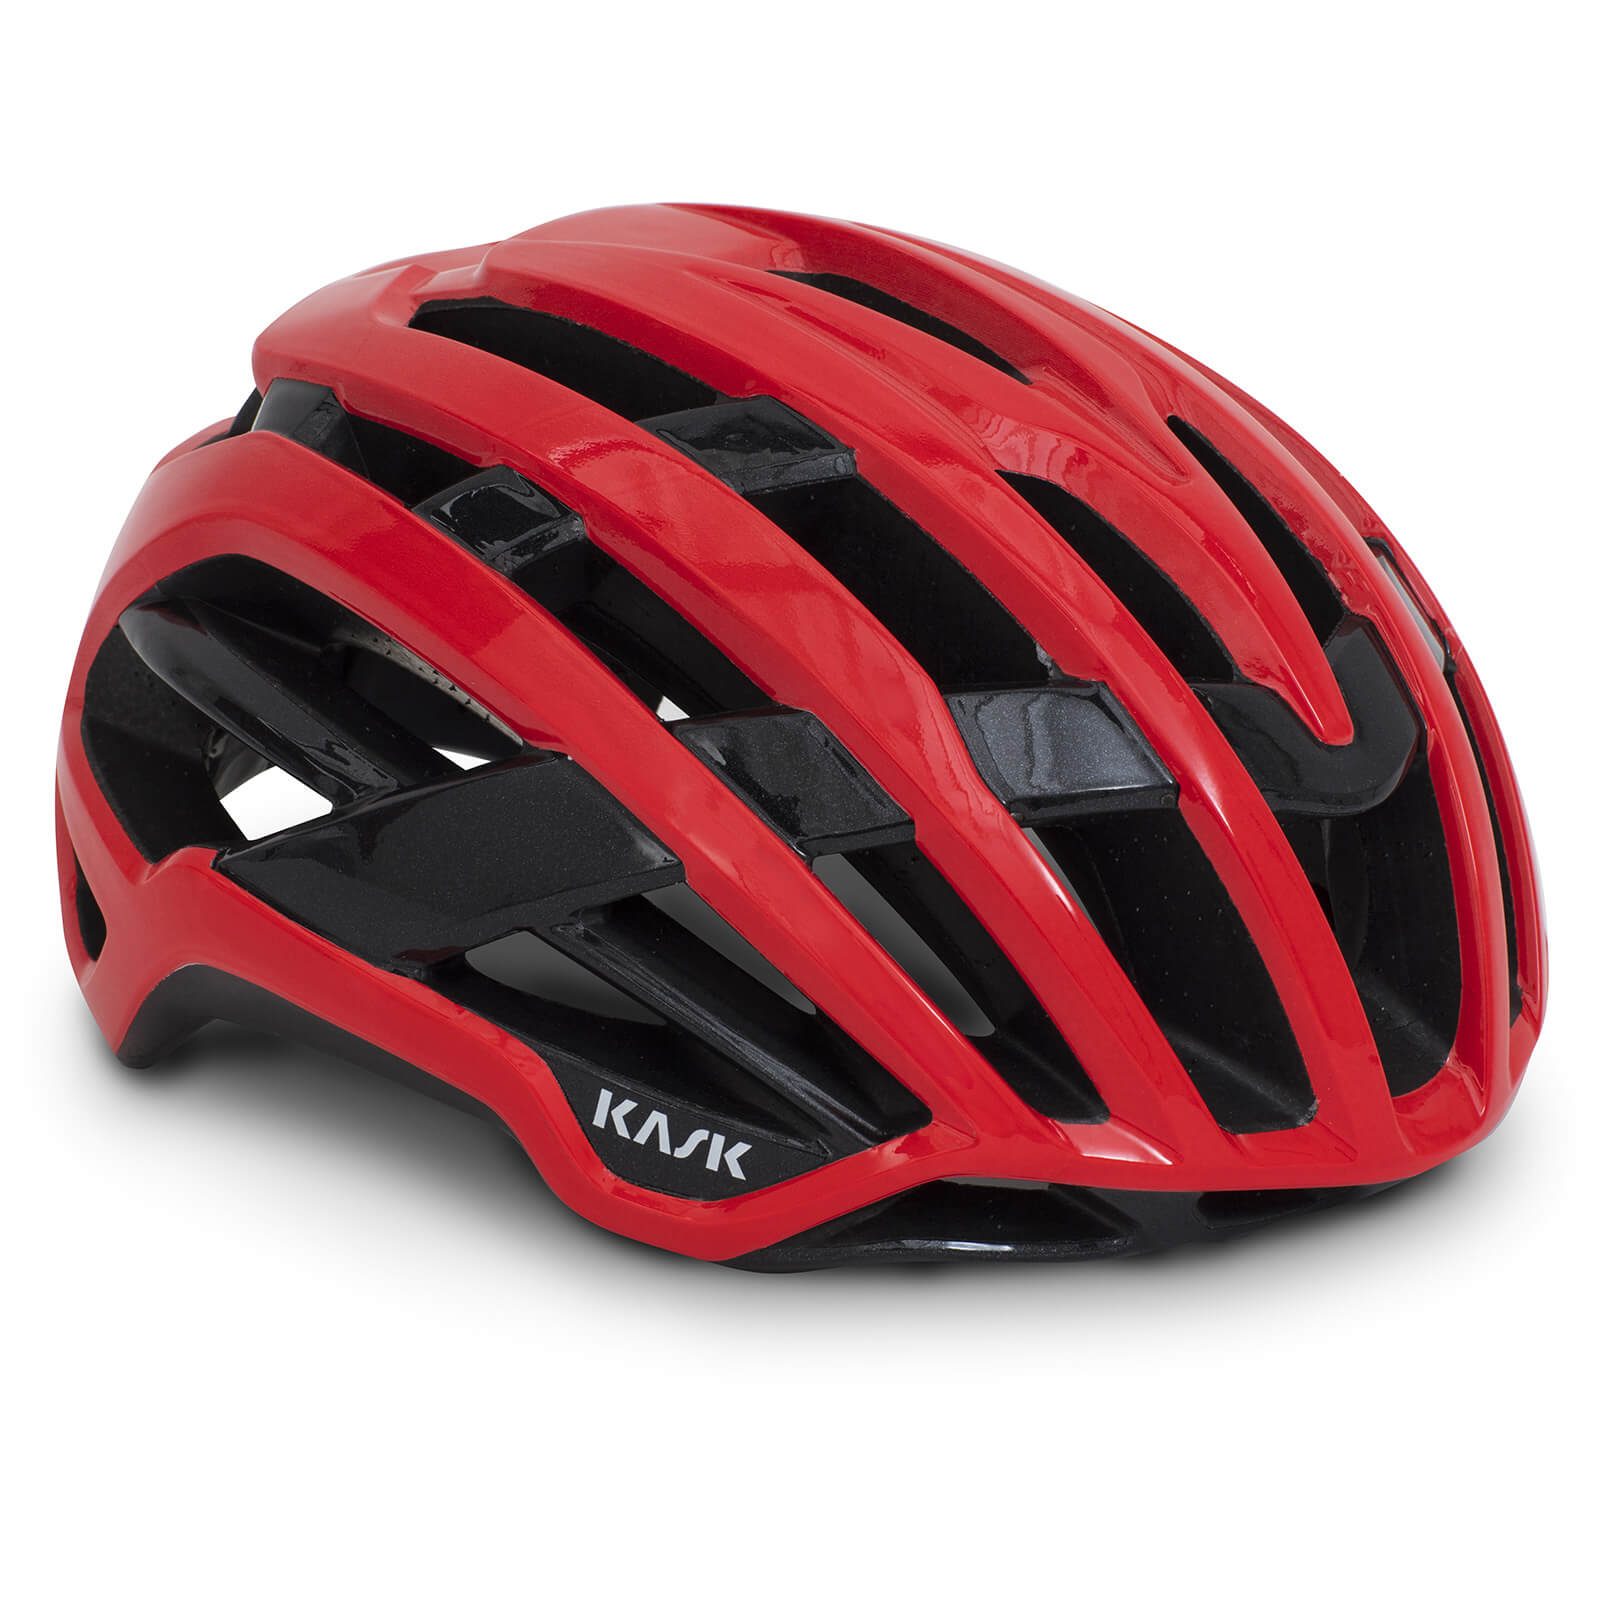 Kask Valegro WG11 Road Helmet - S - Red